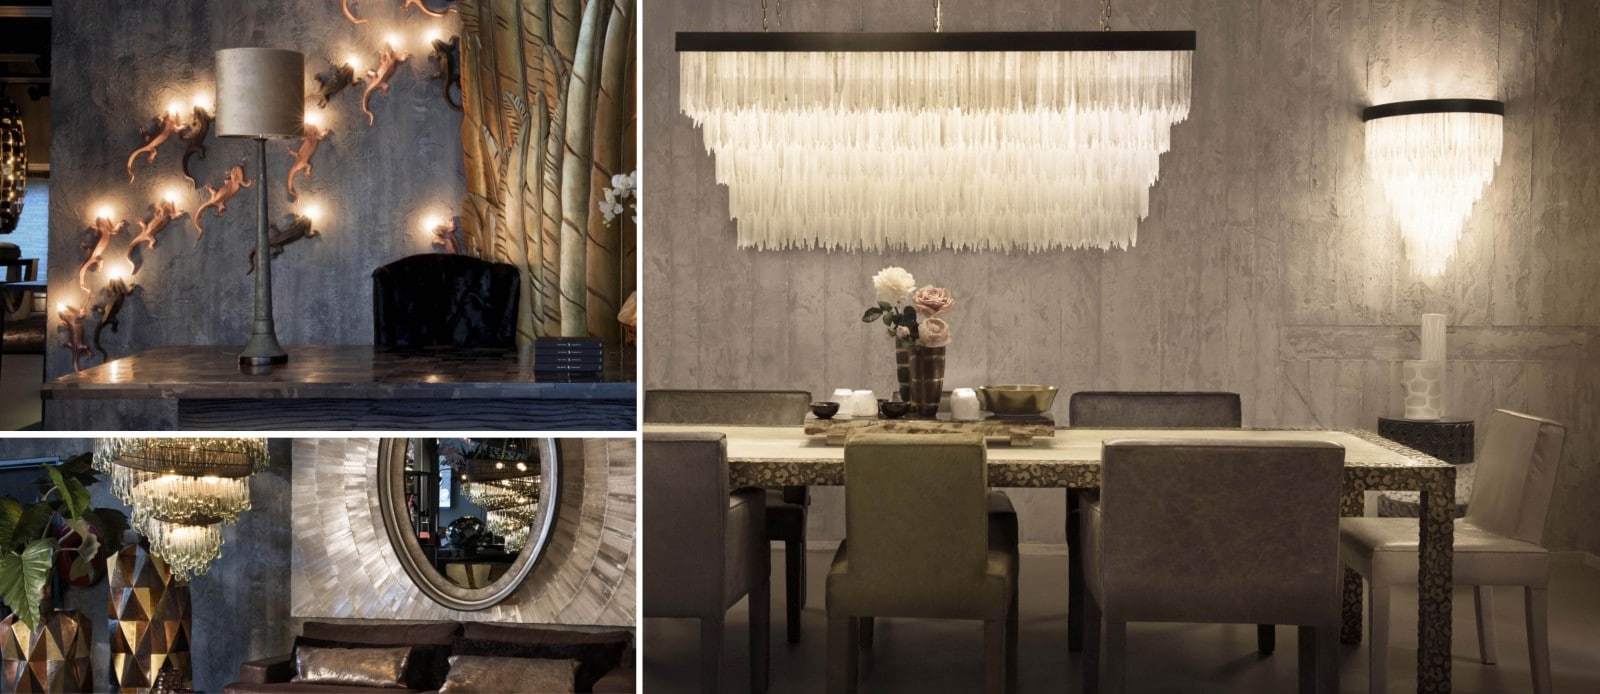 Cravt Luxury Furniture Designer Collectie amsterdam veiling